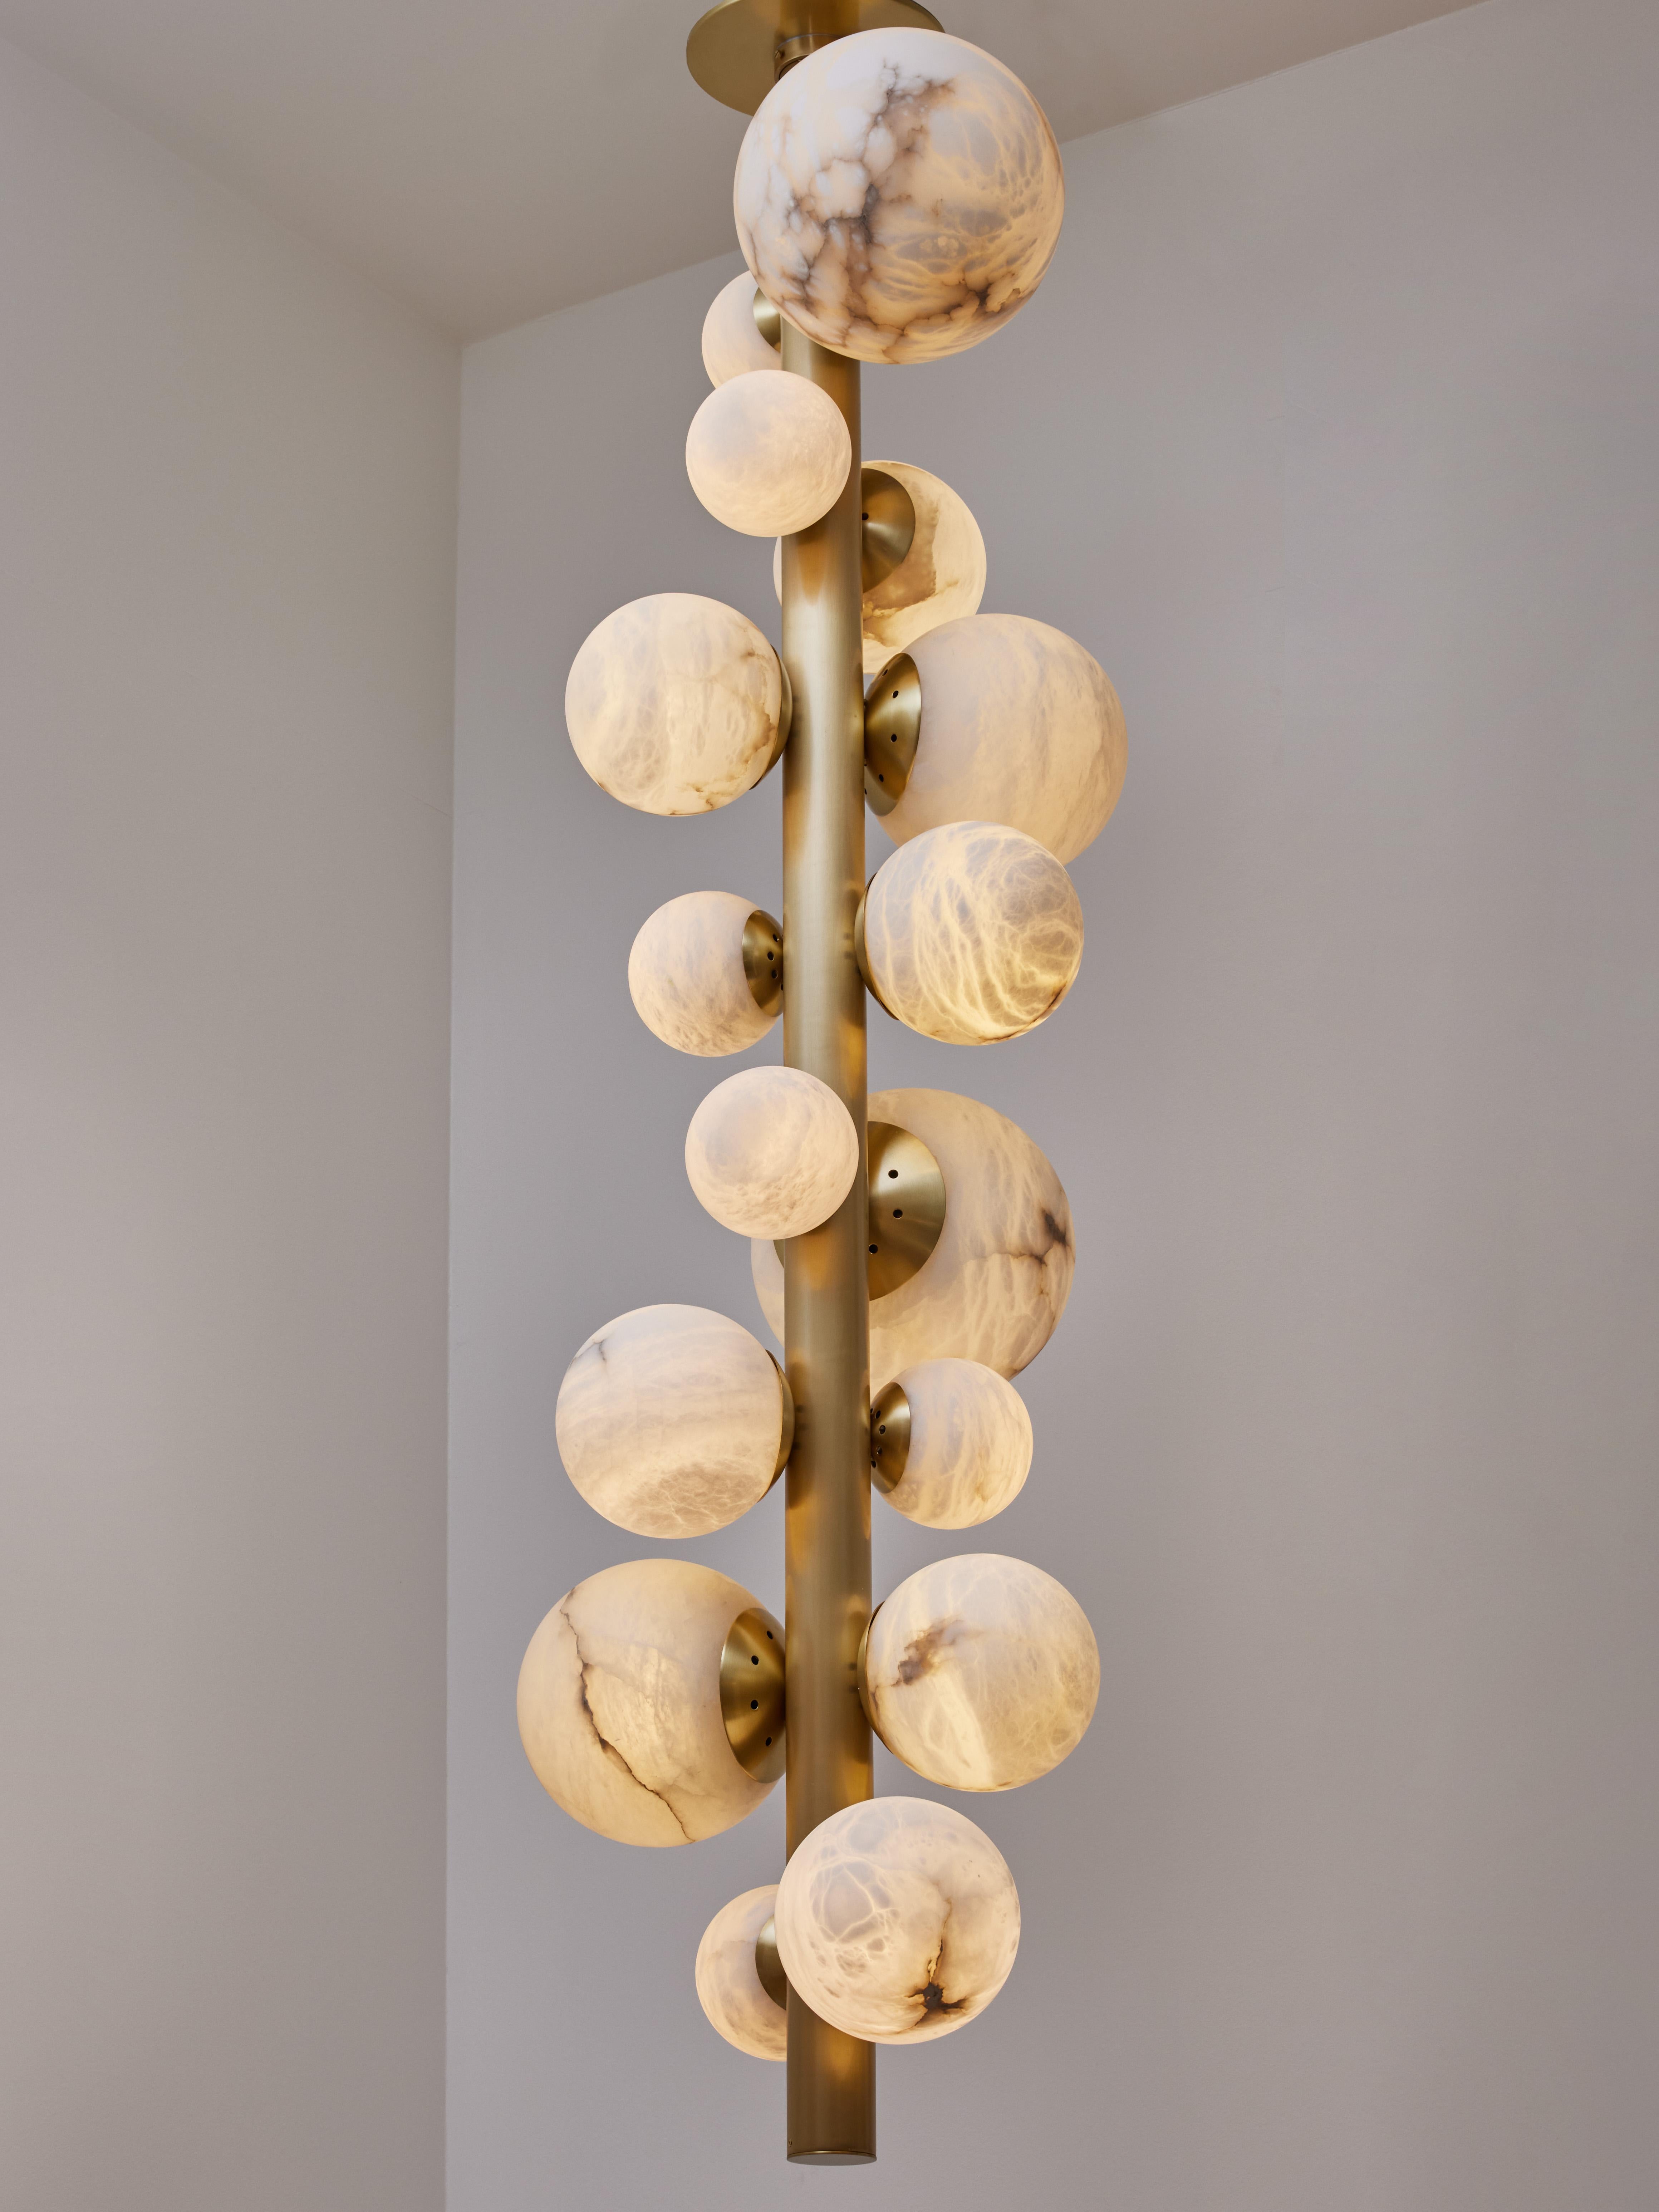 Nouveau design de Glustin Luminaires, suite à nos travaux avec l'albâtre, nous vous proposons cette nouvelle variation composée d'une tige verticale en laiton qui supporte des globes d'albâtre éclairés de différentes tailles.